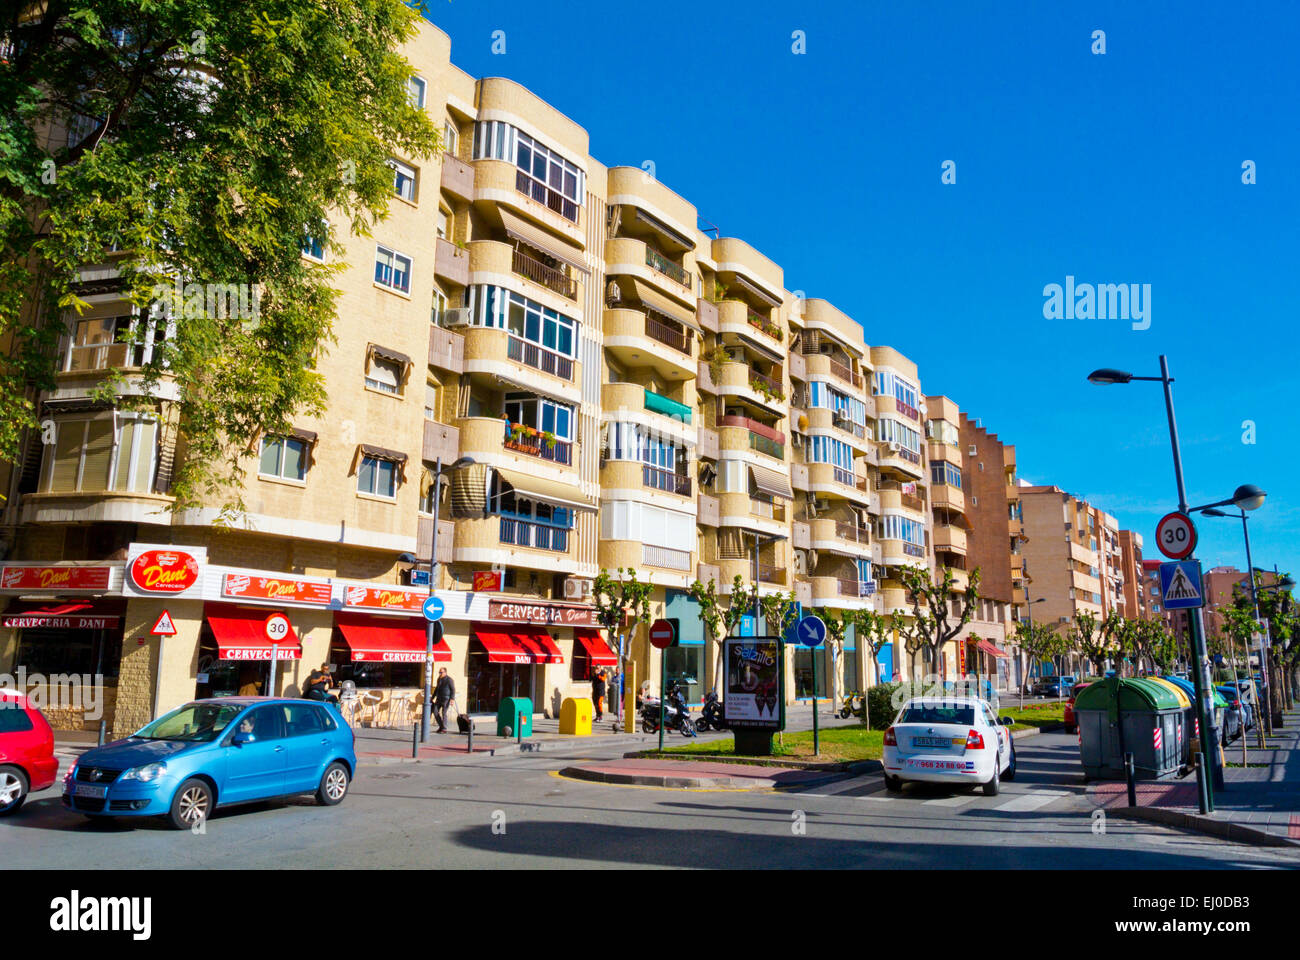 Calle Industria, Barrrio del Carmen district, Murcia, Spagna Foto Stock